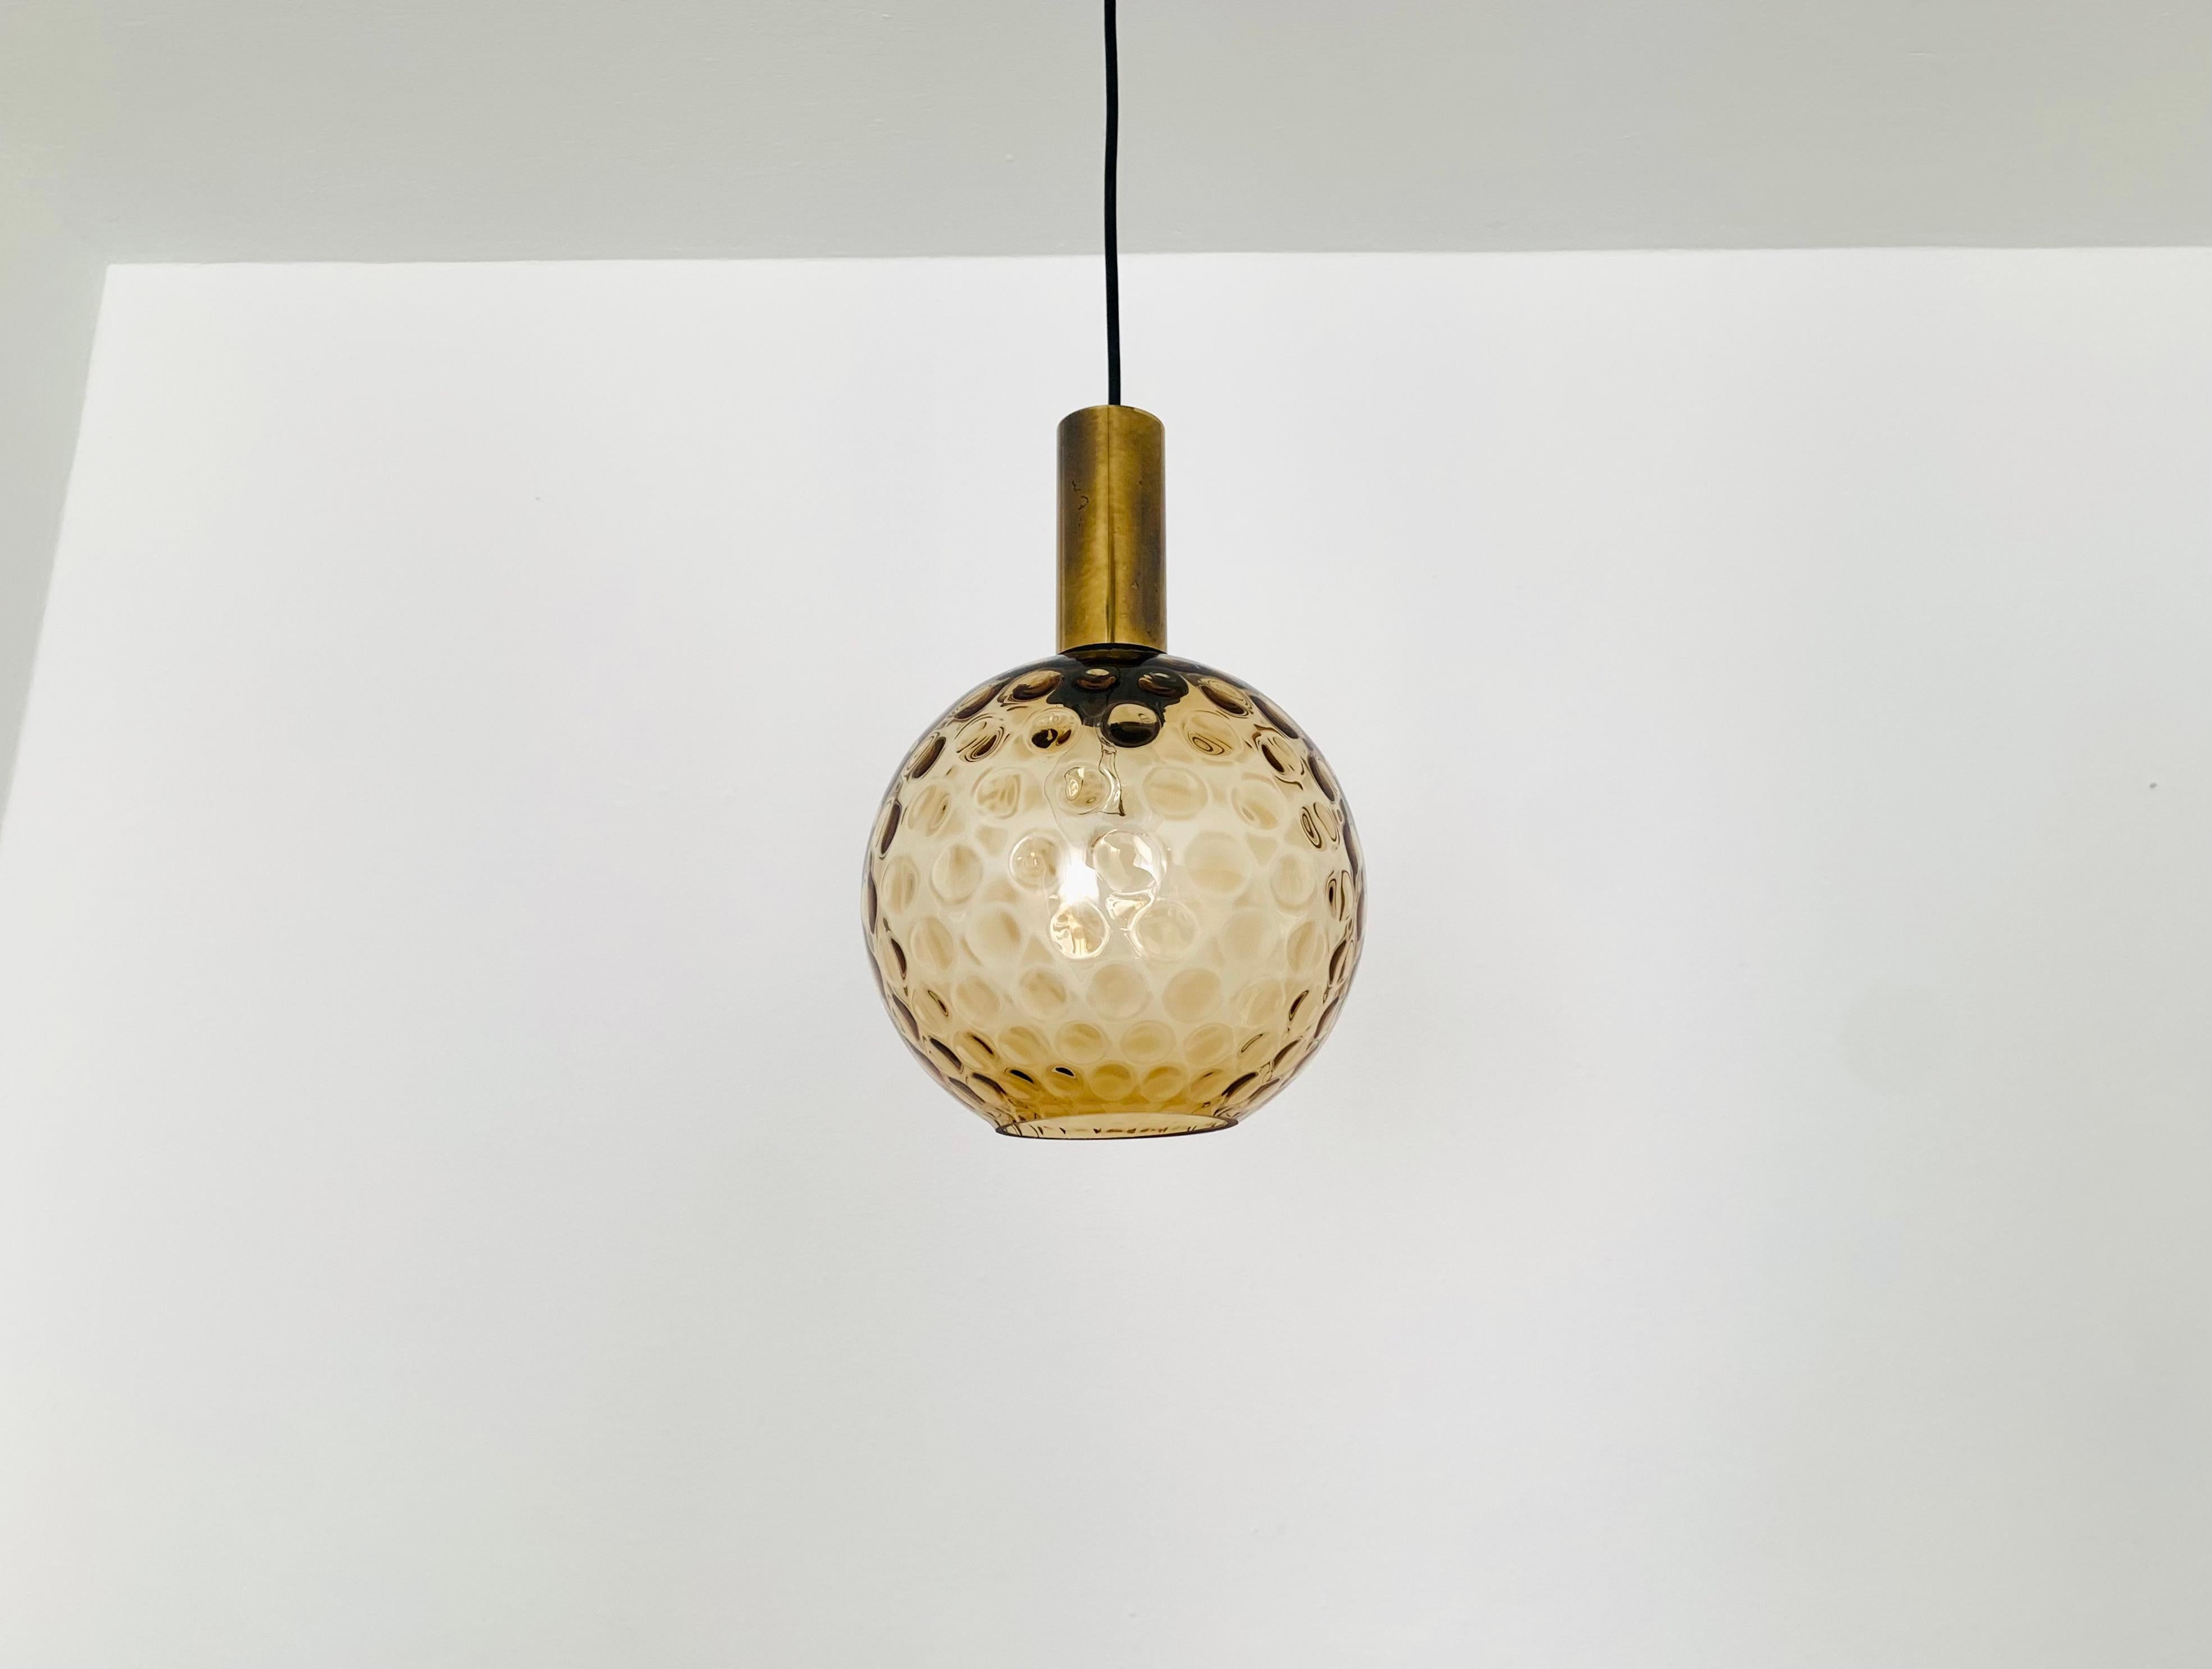 Wunderschöne Hängeleuchte aus Blasenglas aus den 1960er Jahren.
Die Lampe verbreitet ein tolles Lichtspiel im Raum und verzaubert mit ihrer Ausstrahlung.
Hochwertige Verarbeitung und außergewöhnliches Design.

Bedingung:

Sehr guter Vintage-Zustand